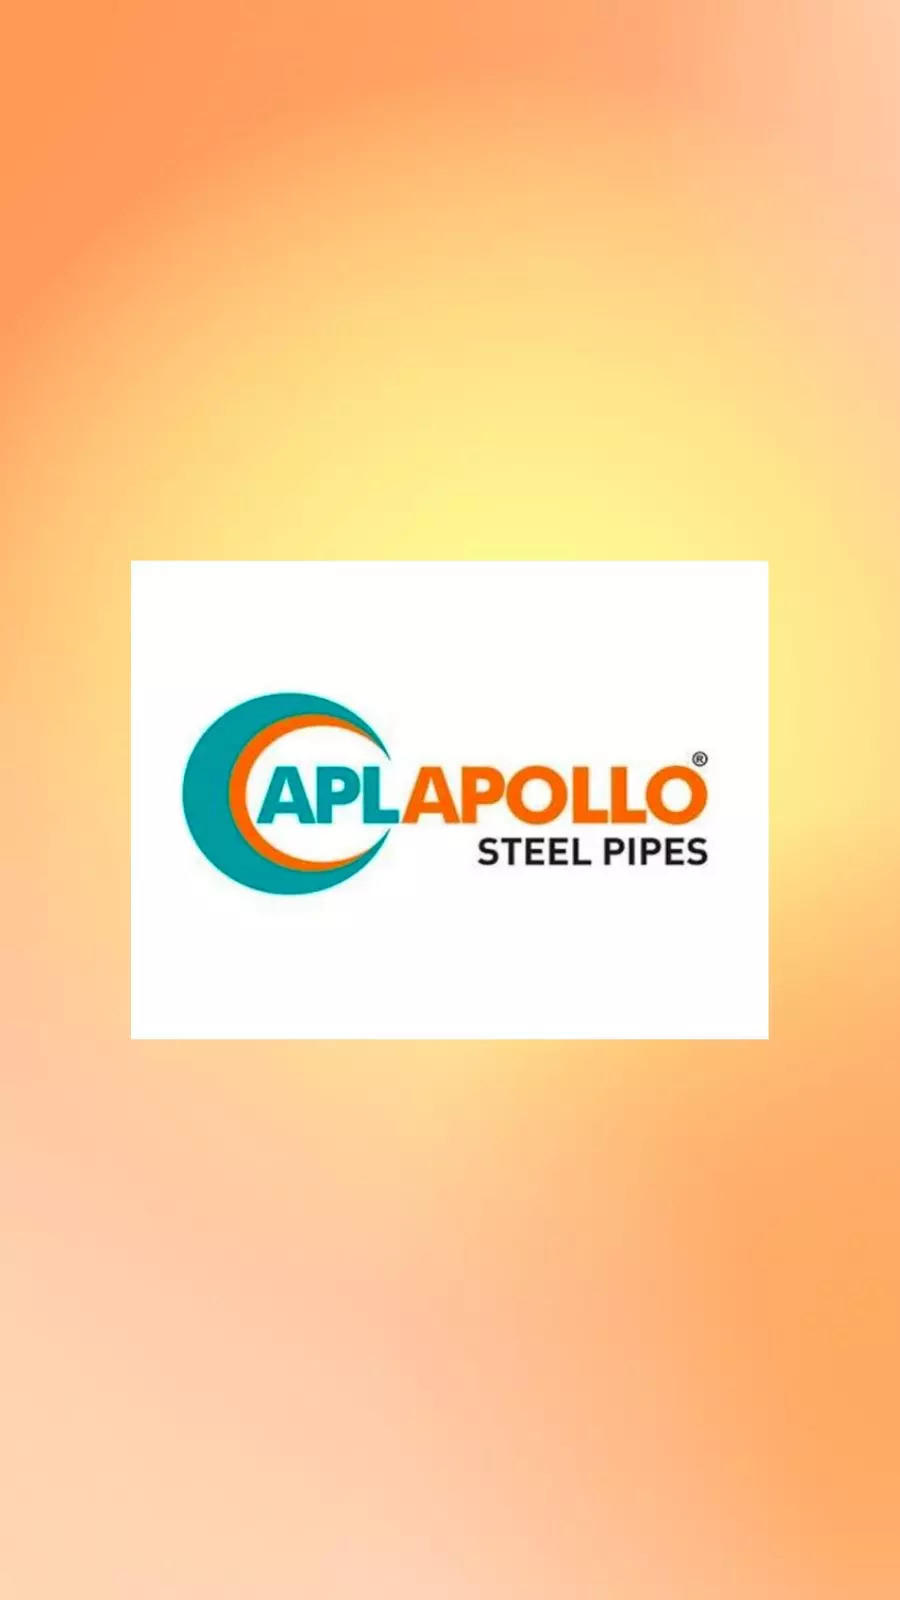 Create the next logo for apollo | Logo design contest | 99designs